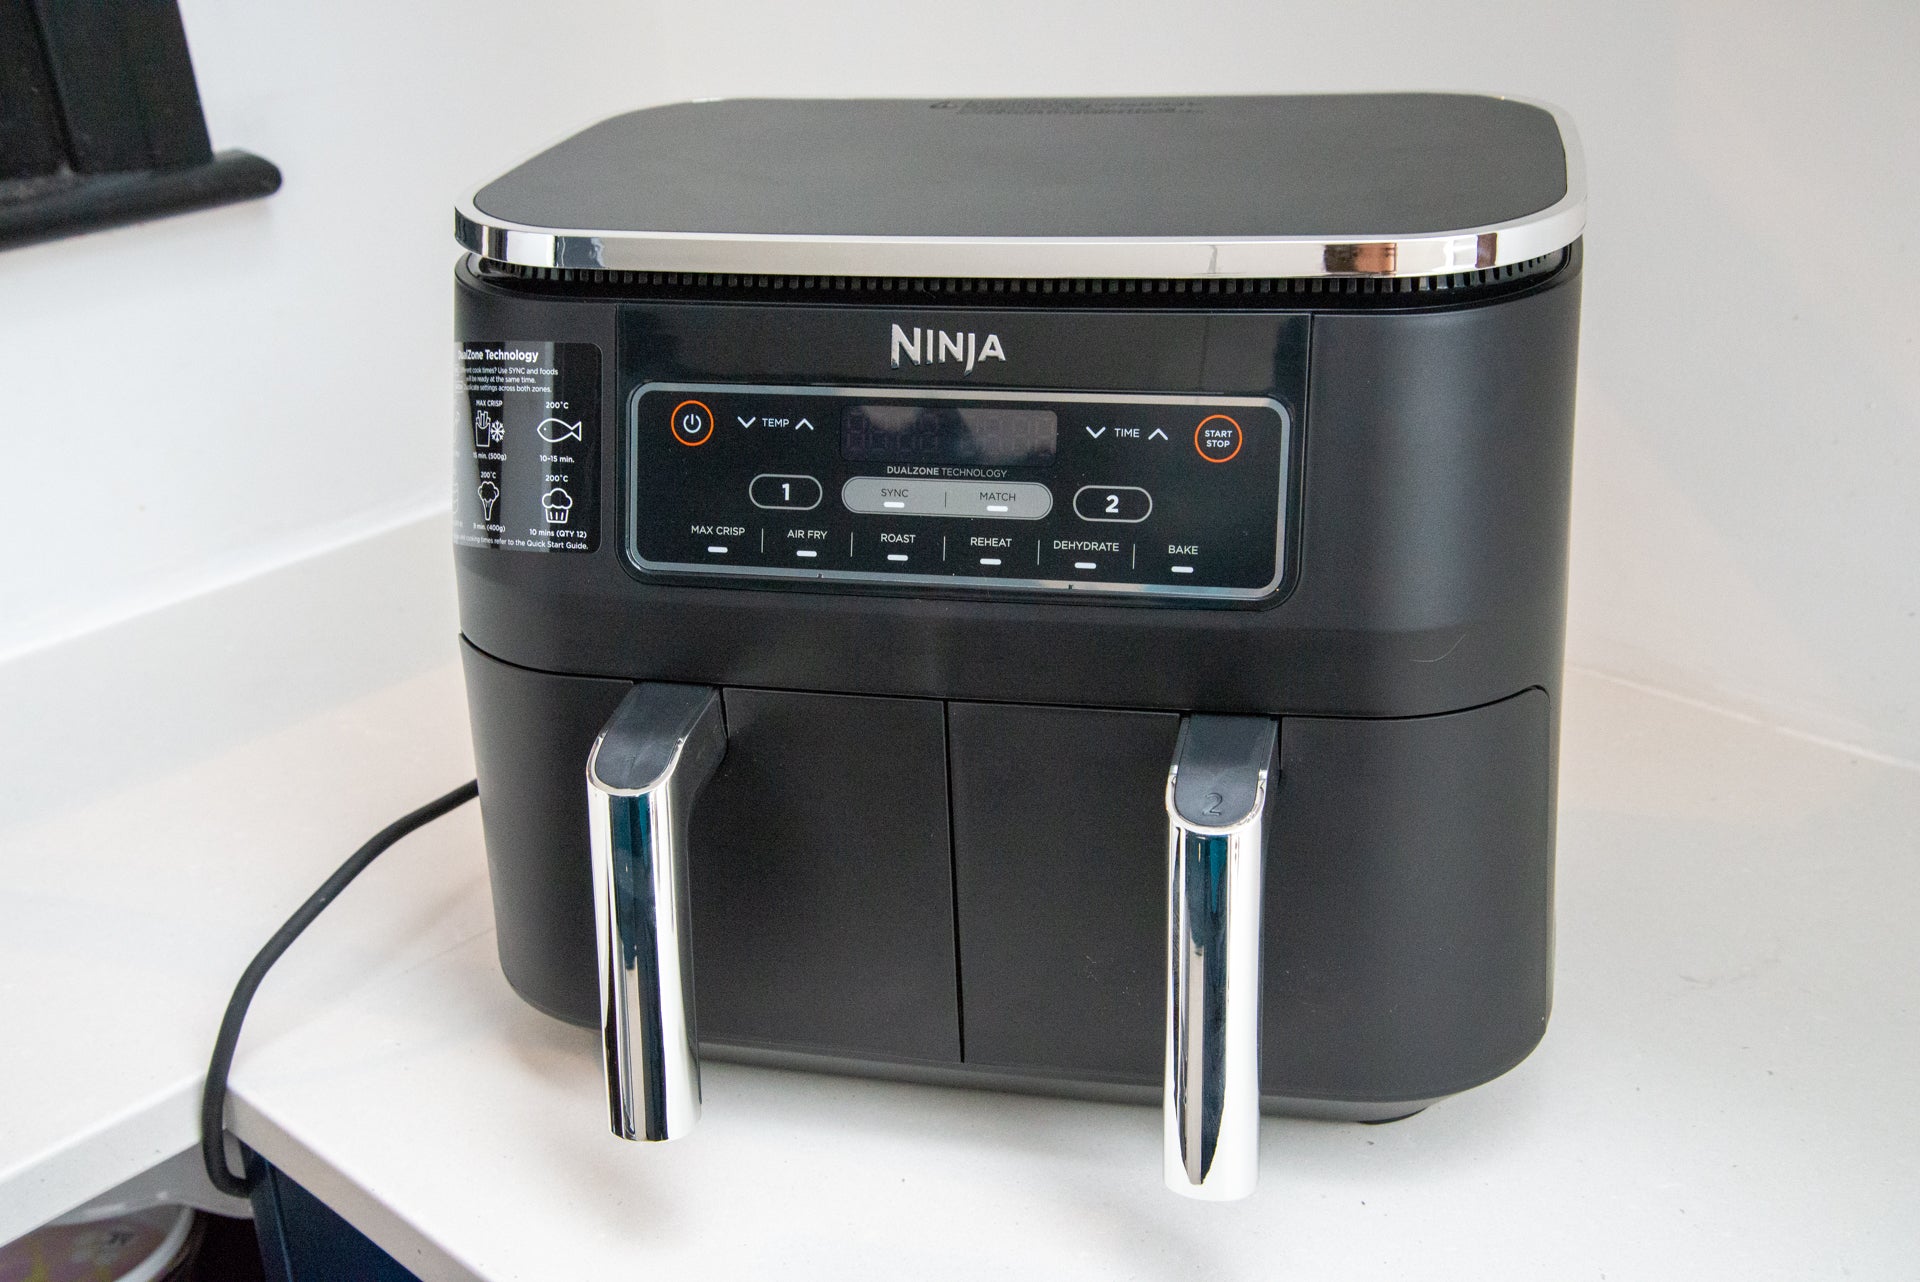 Ninja Foodi Dual Zone 7.6L Air Fryer Review | Trusted Reviews